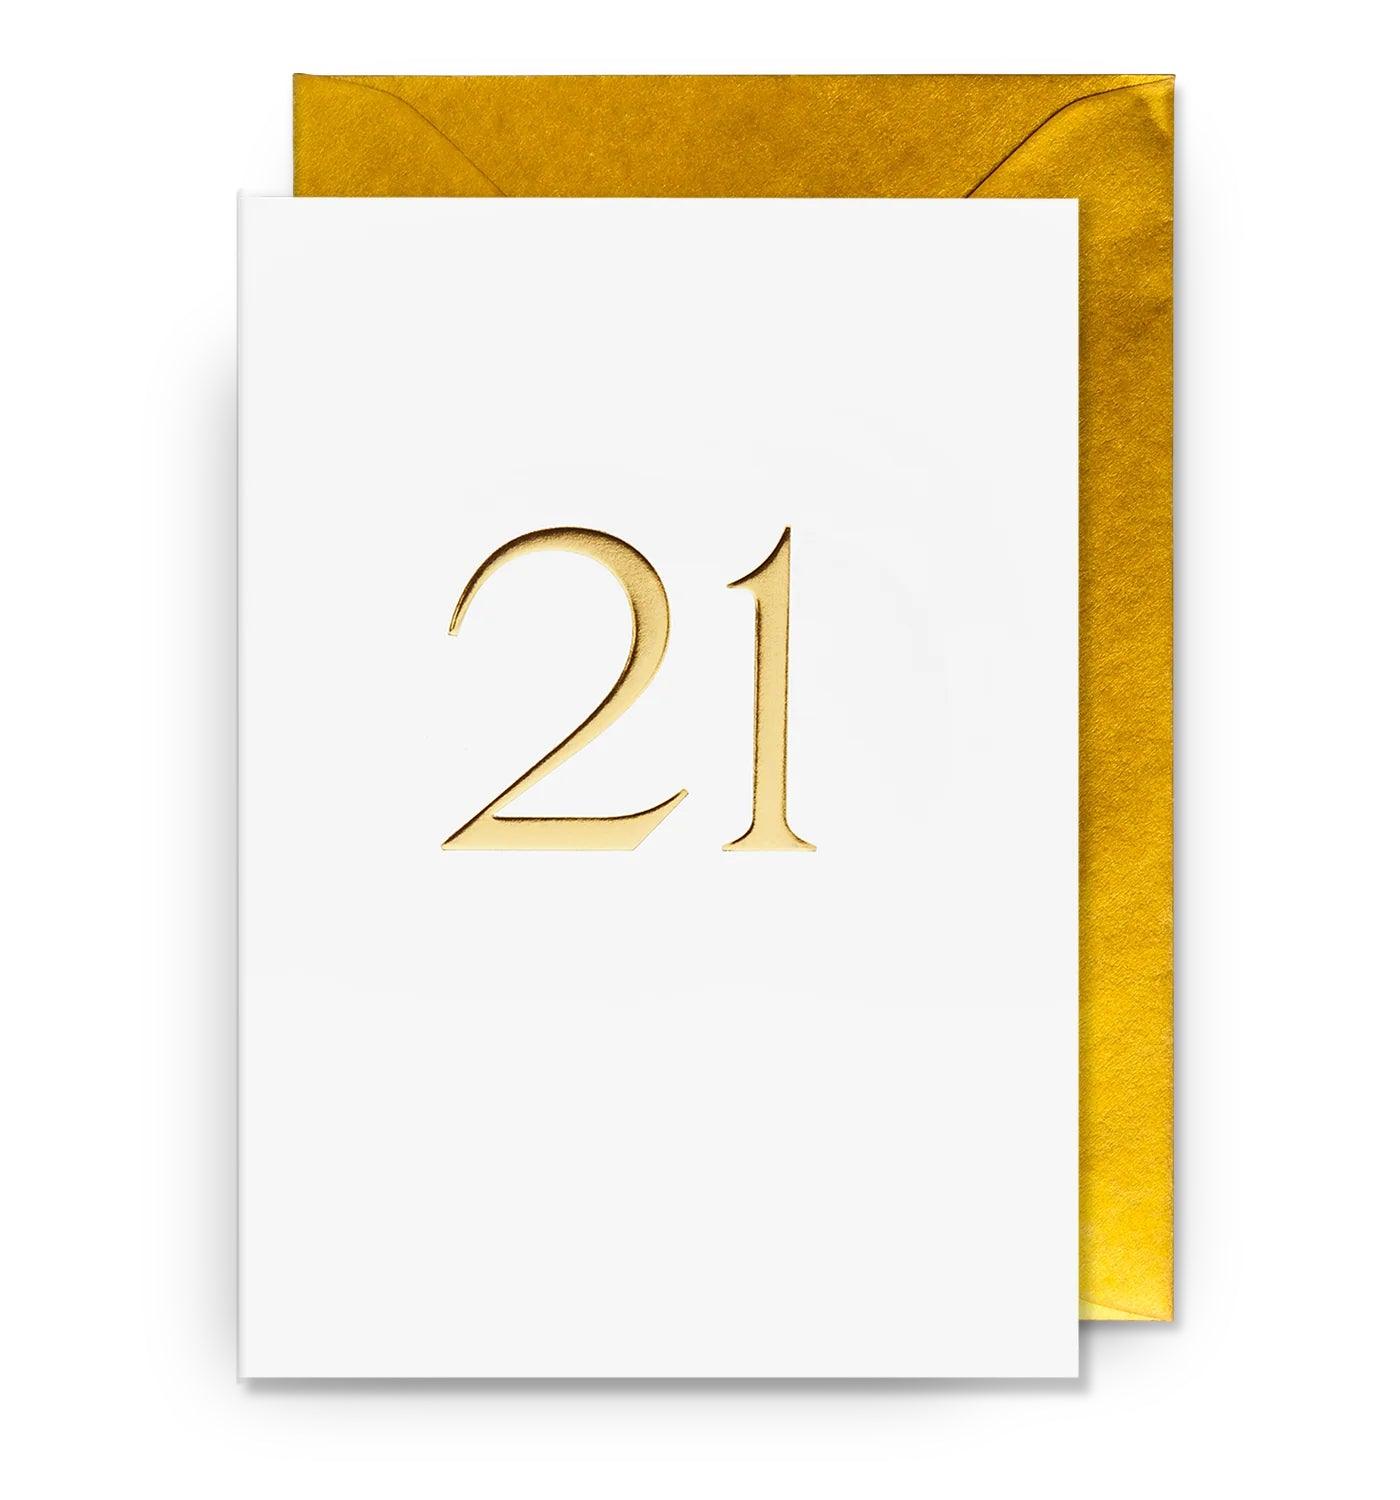 '21' Greeting Card - leonidasbrighton.co.uk - Leonidas Brighton